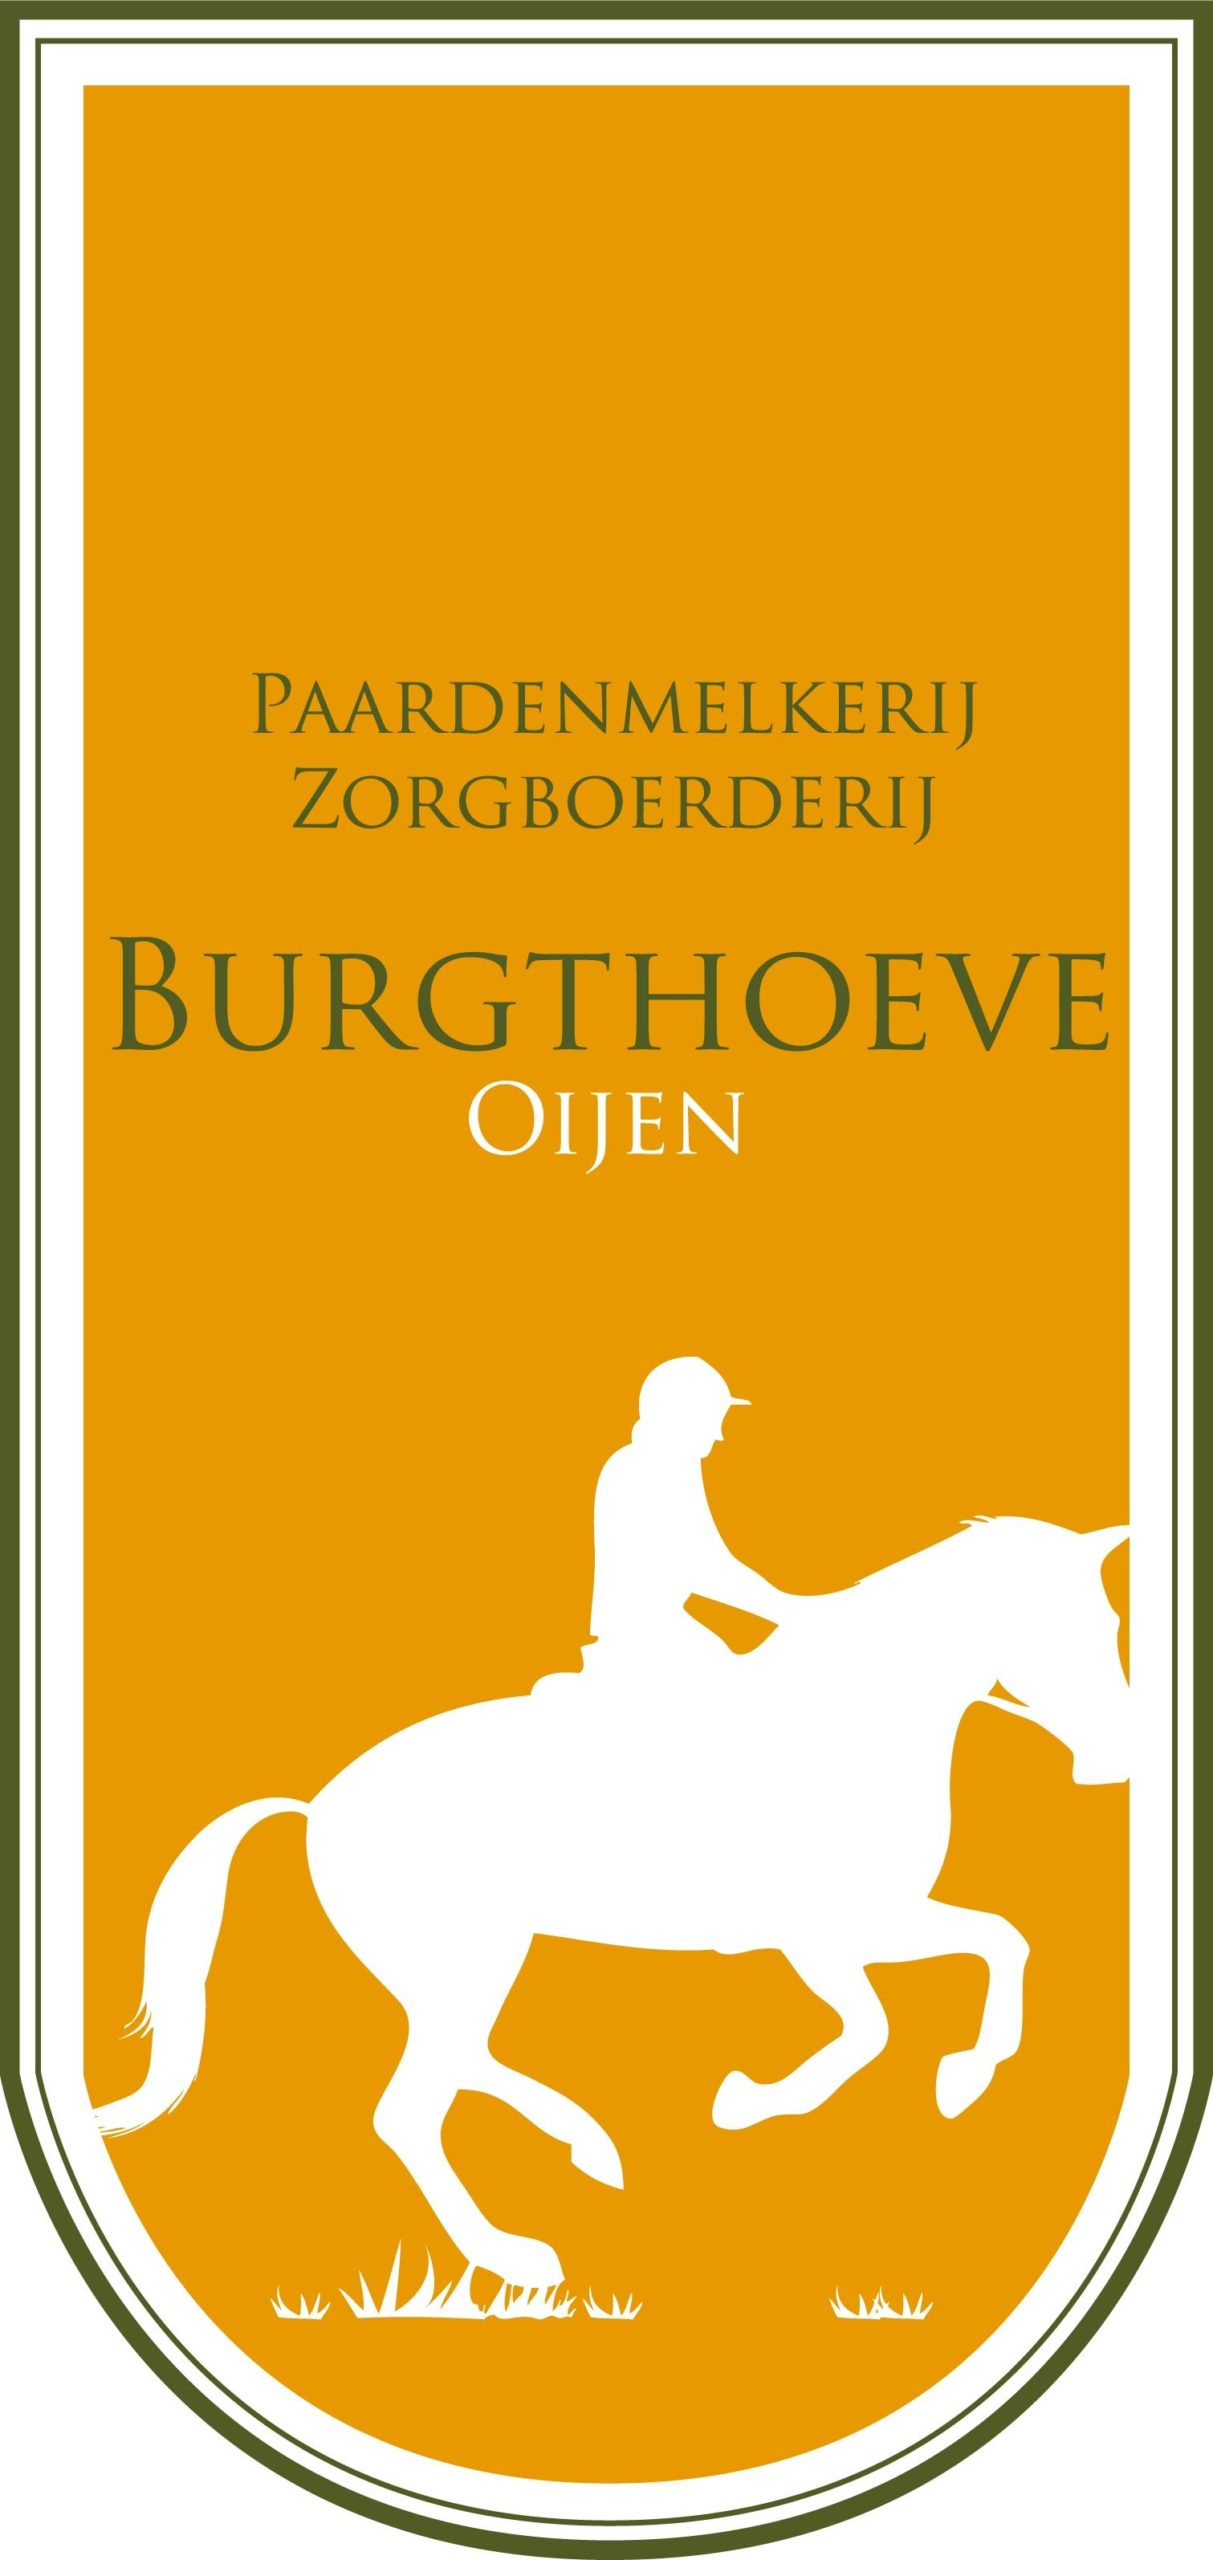 Burgthoeve